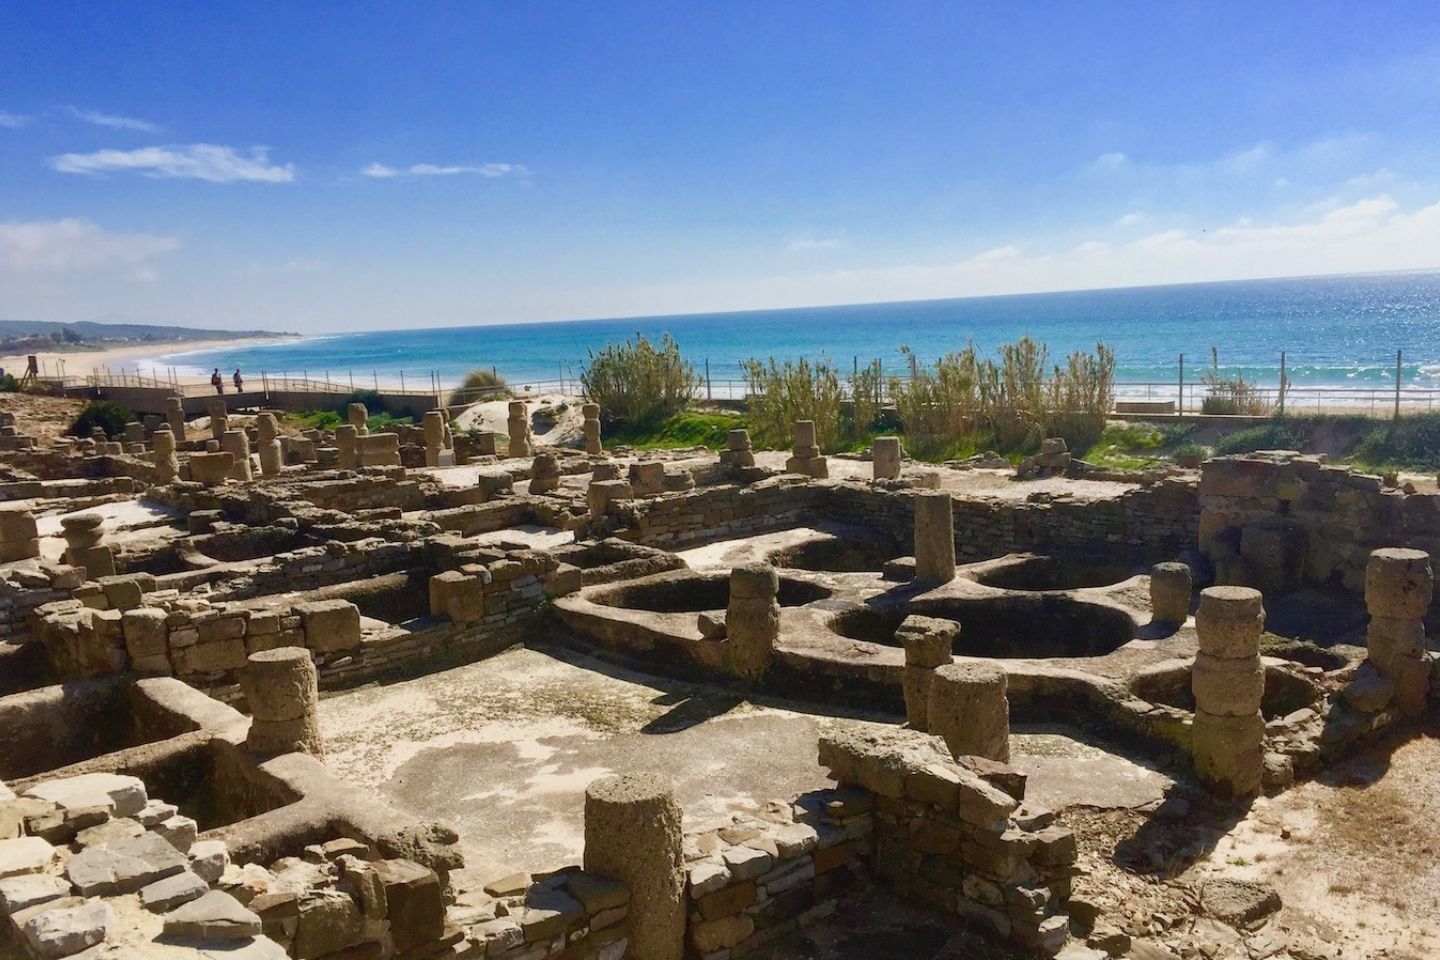 baelo claudia, roman ruins near Tarifa